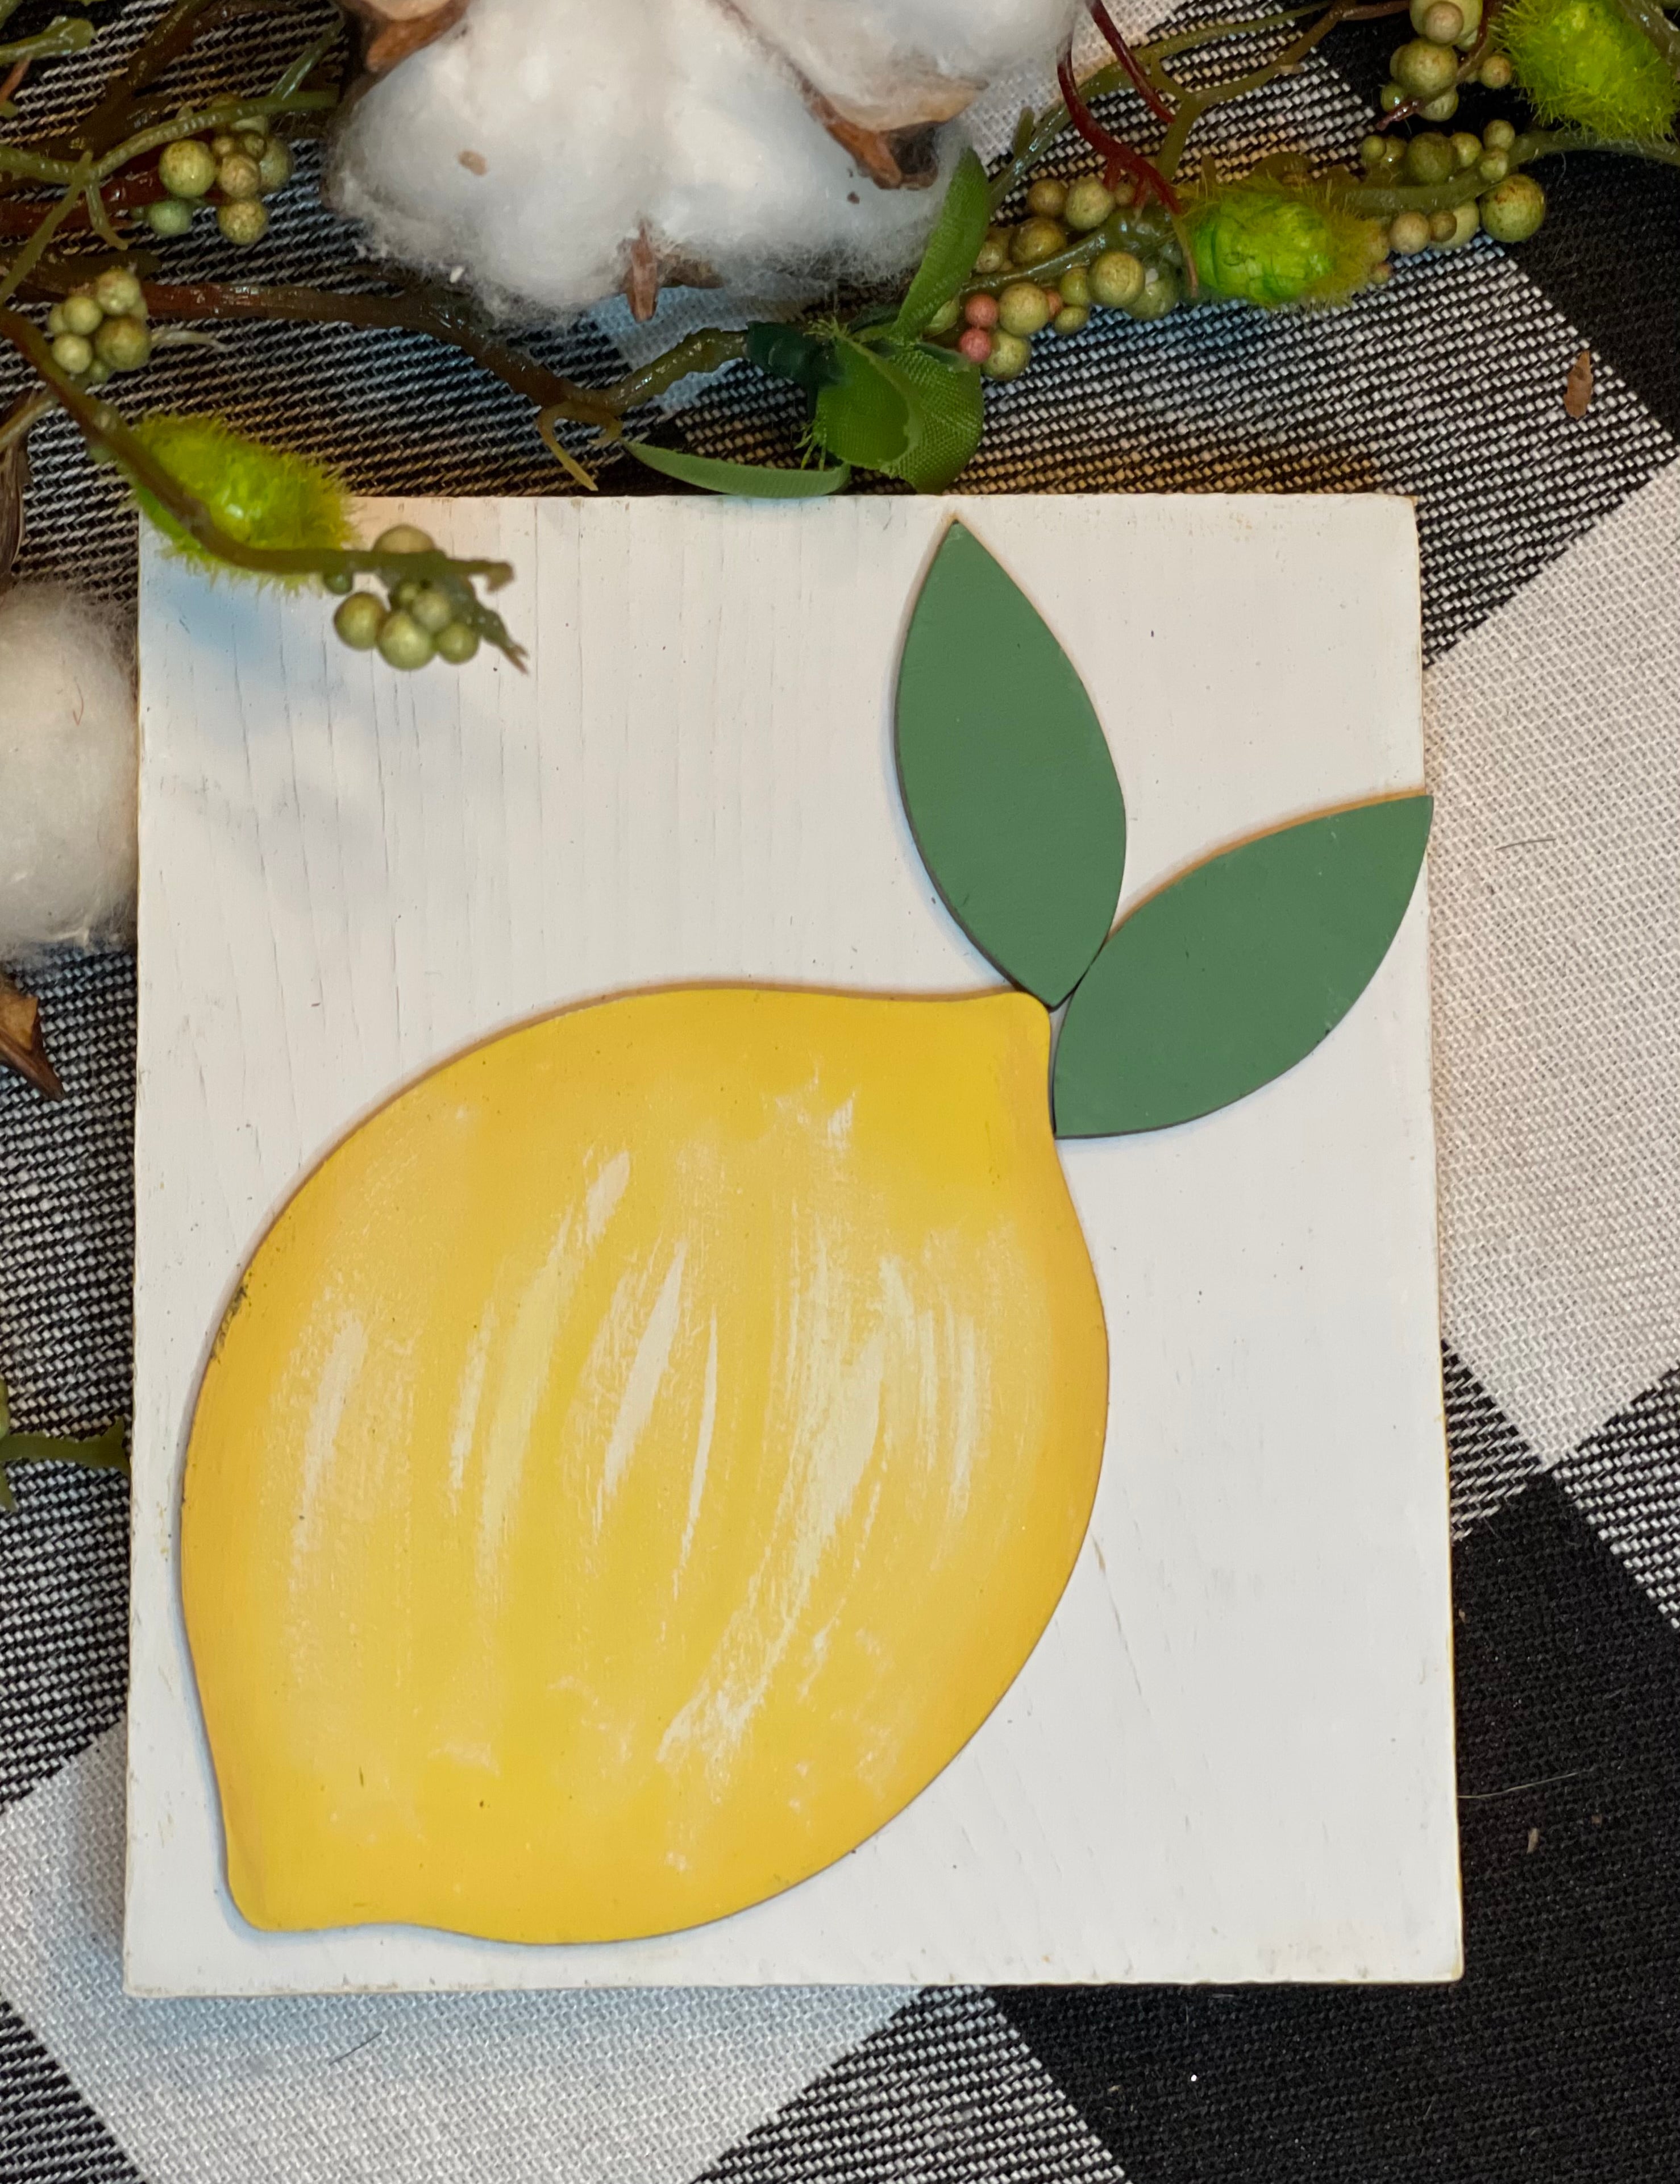 3D Lemon Mini Wood Sign shows the white 3D lemon cutout with floral and cotton embellishments.